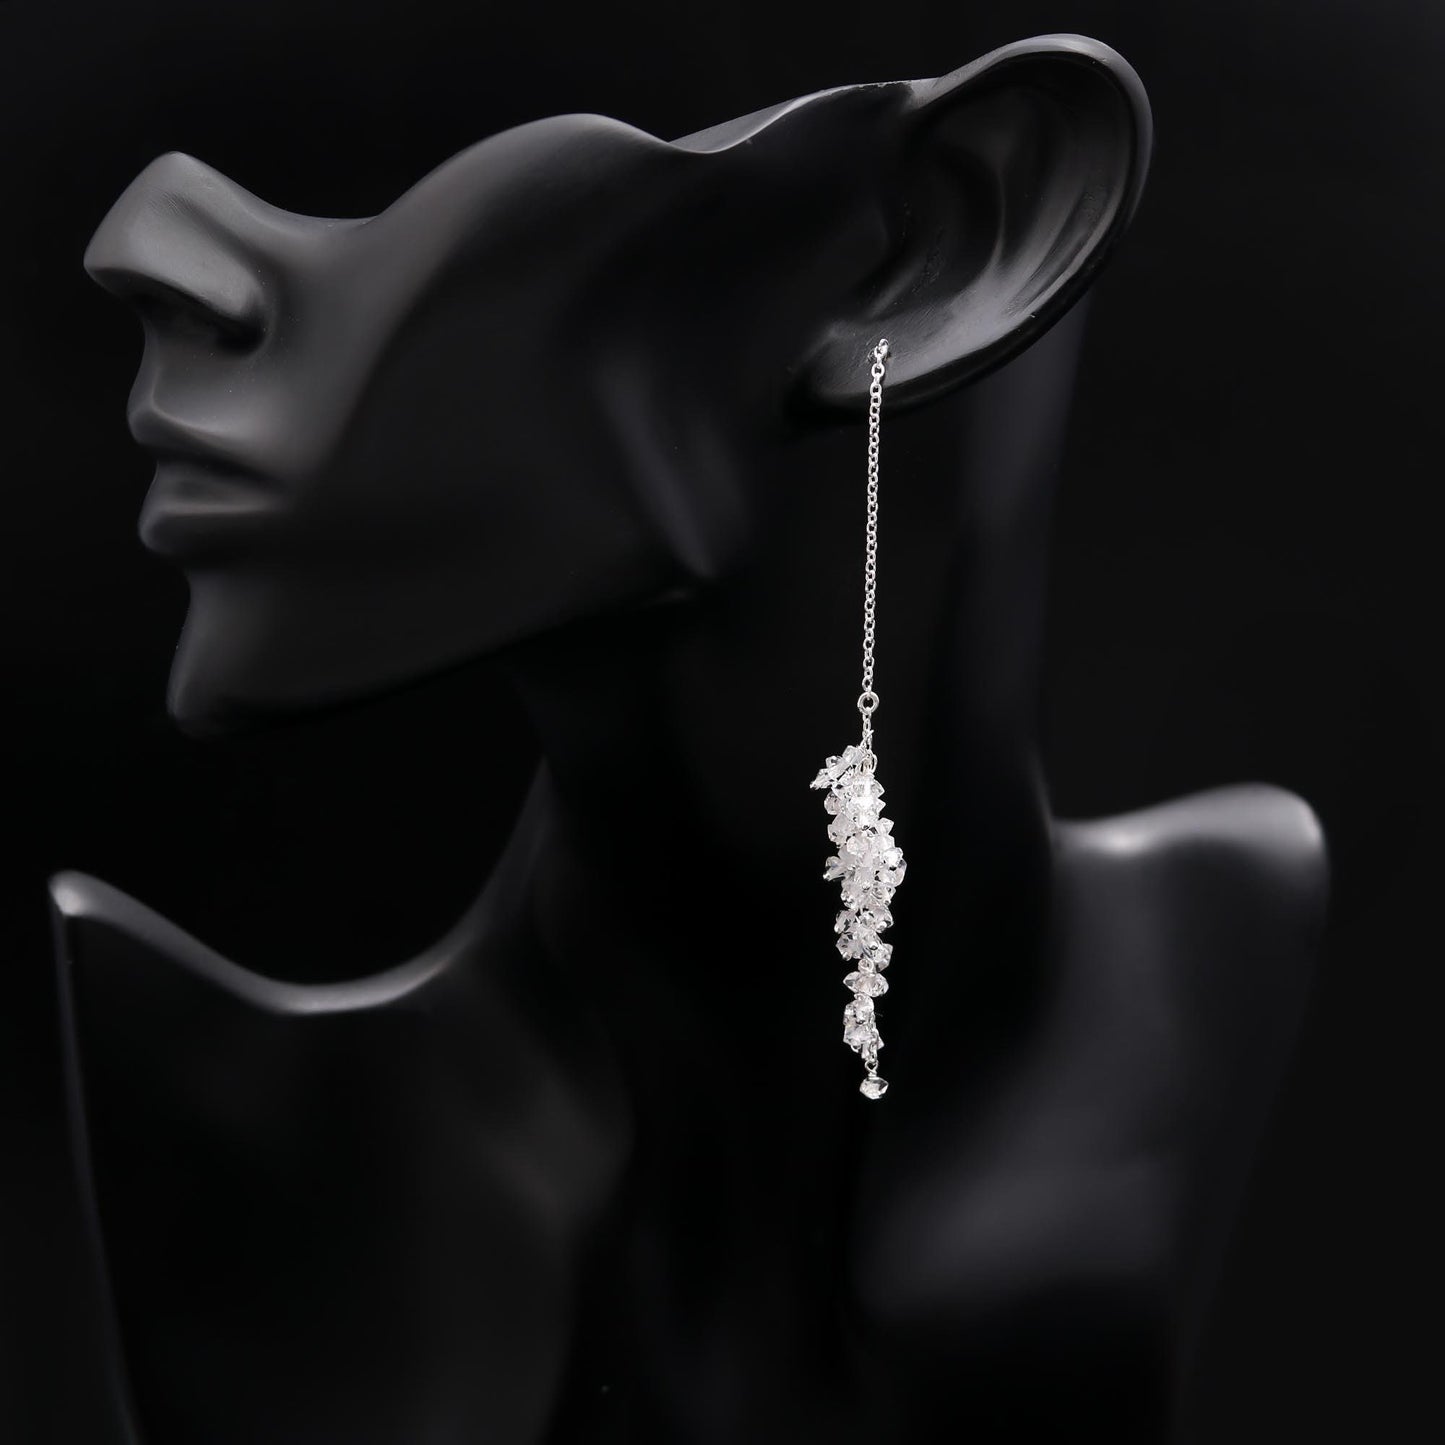 Bridemaid Cluster Herkimer Diamond Long Threader Earrings,Handmade, Silver 925 Earring, Dainty,Cluster. Gift for her /Anniversary / Birthday